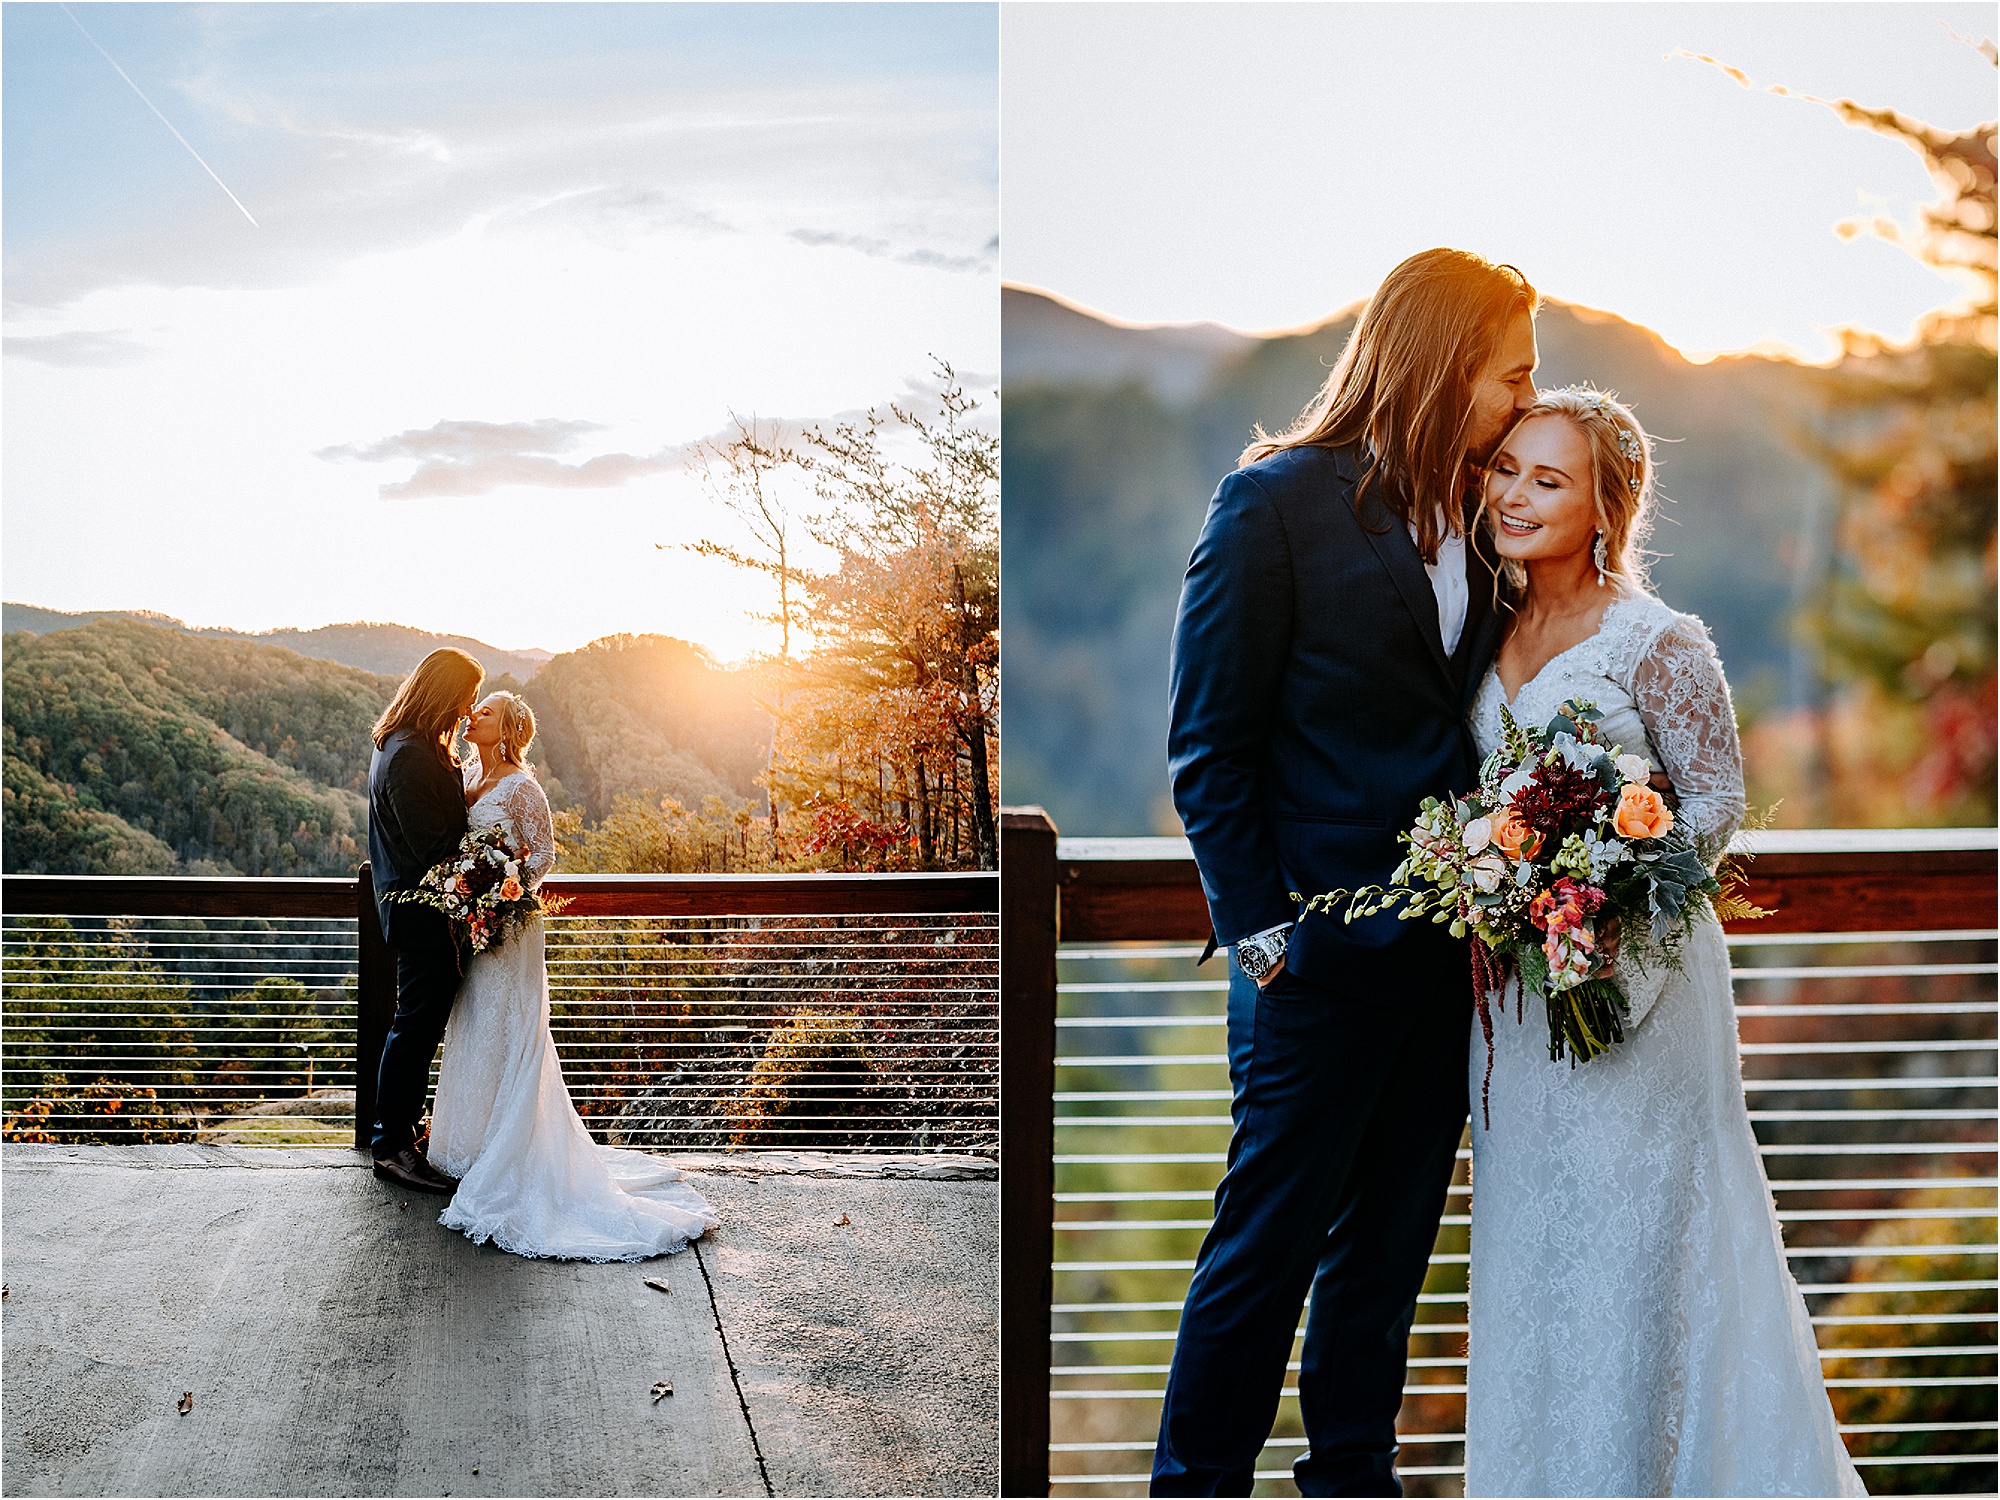 golden hour couple photos at mountainside wedding venue